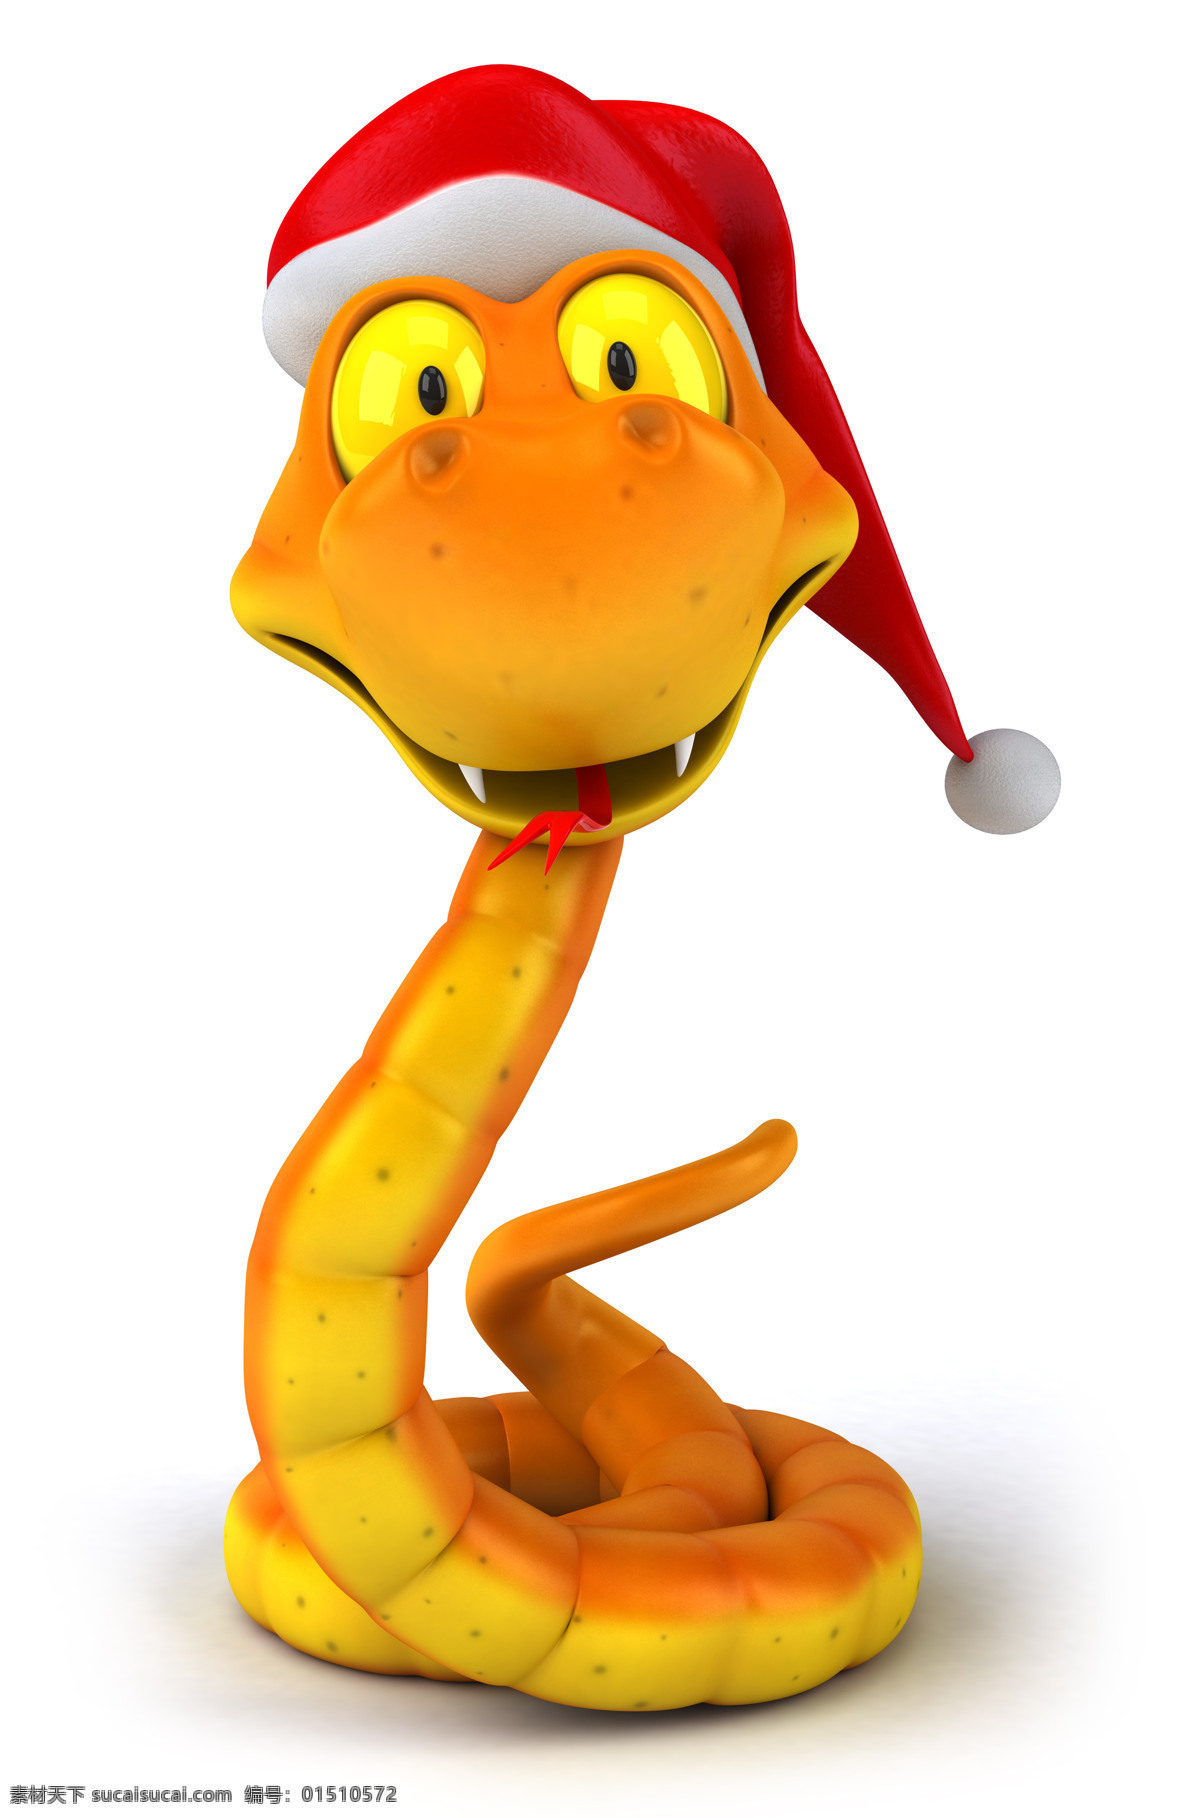 戴 圣诞 帽子 的卡 通 蛇 卡通蛇 表情 2013 新年素材 节日素材 新年卡通素材 卡通动物 生物世界